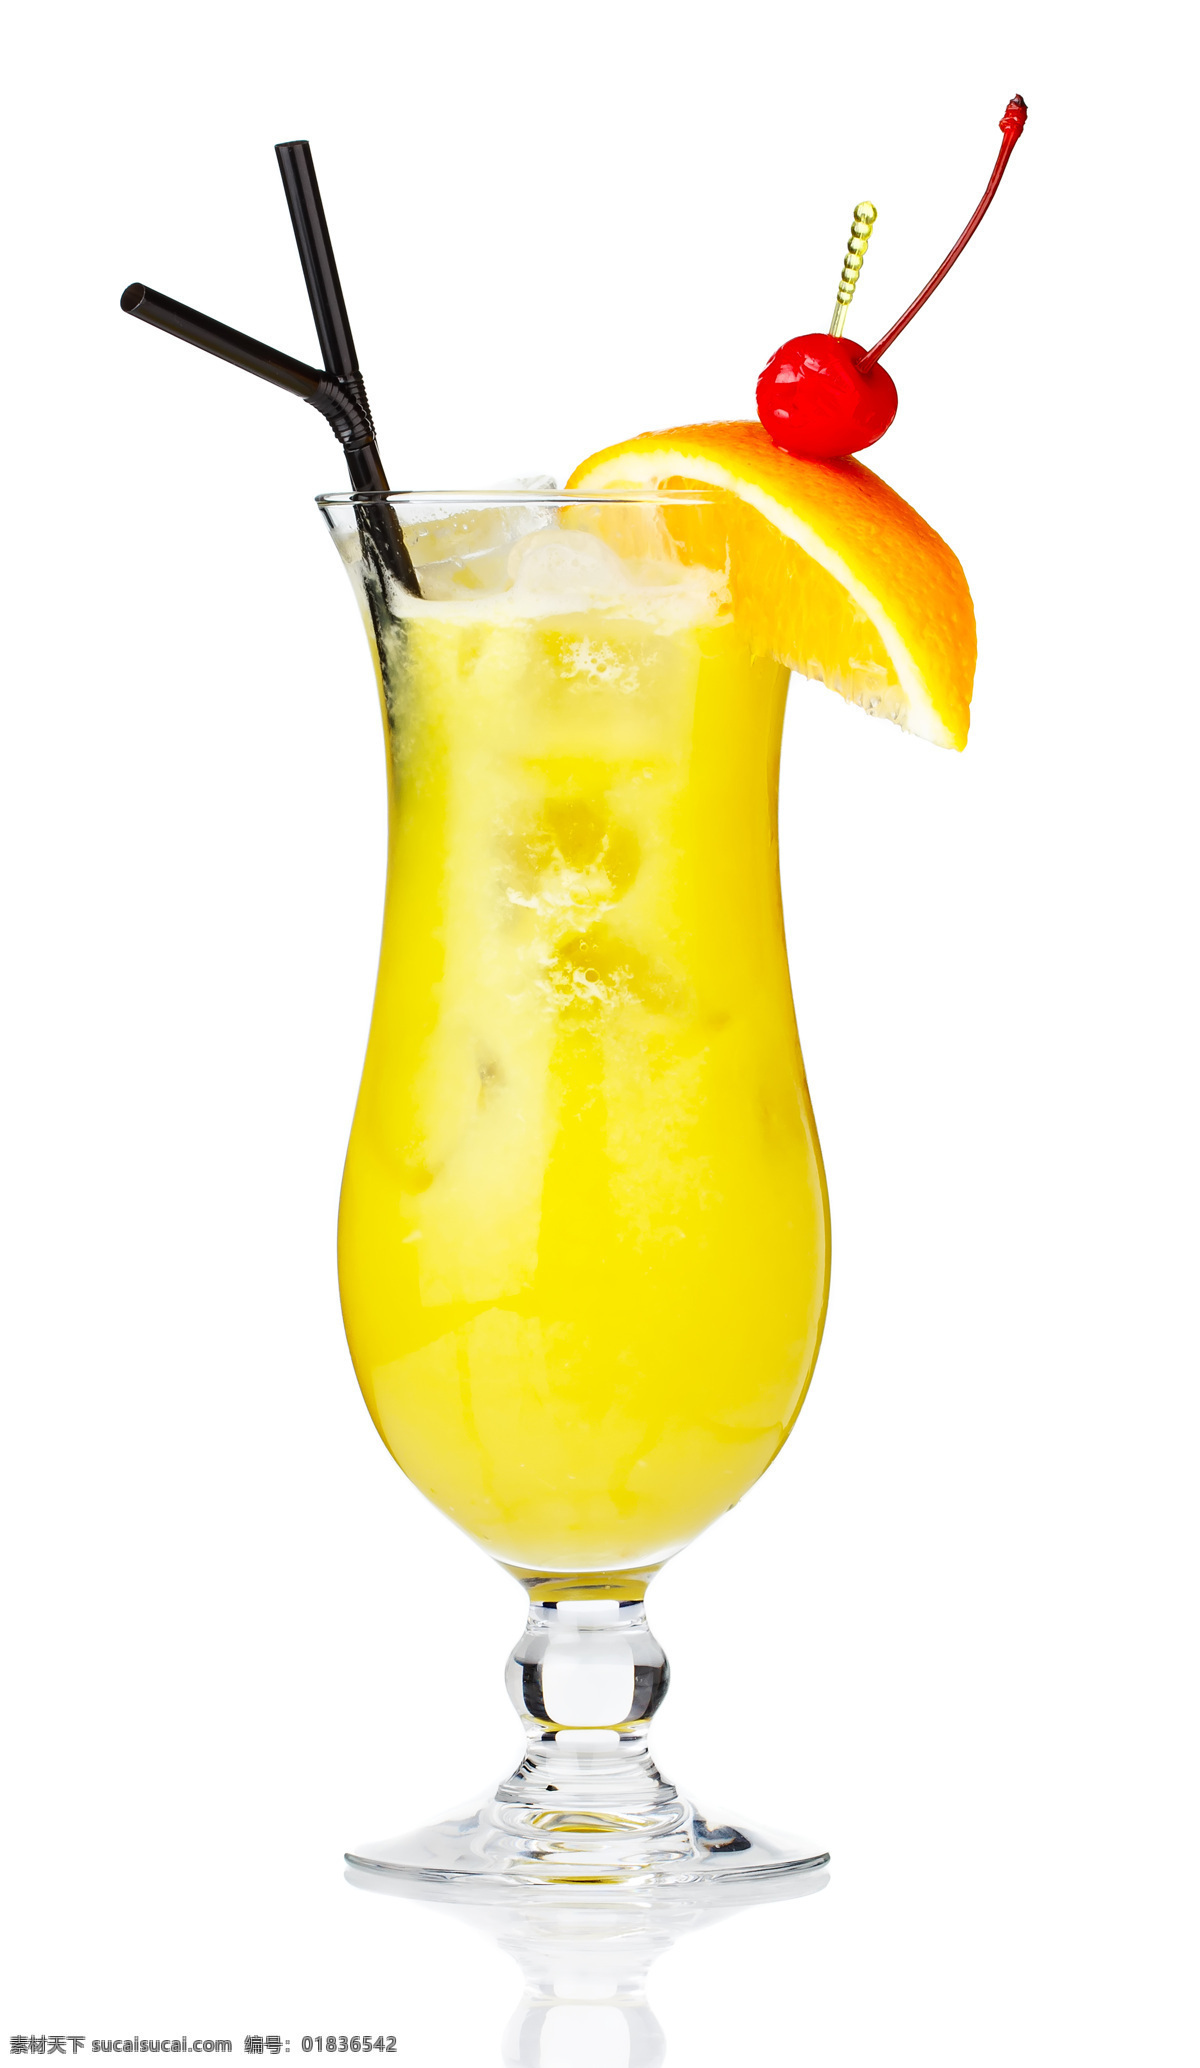 柠檬果汁 水果果汁 水果 杯子 玻璃杯子 果蔬 休闲饮品 健康食品 酒水饮料 餐饮美食 白色